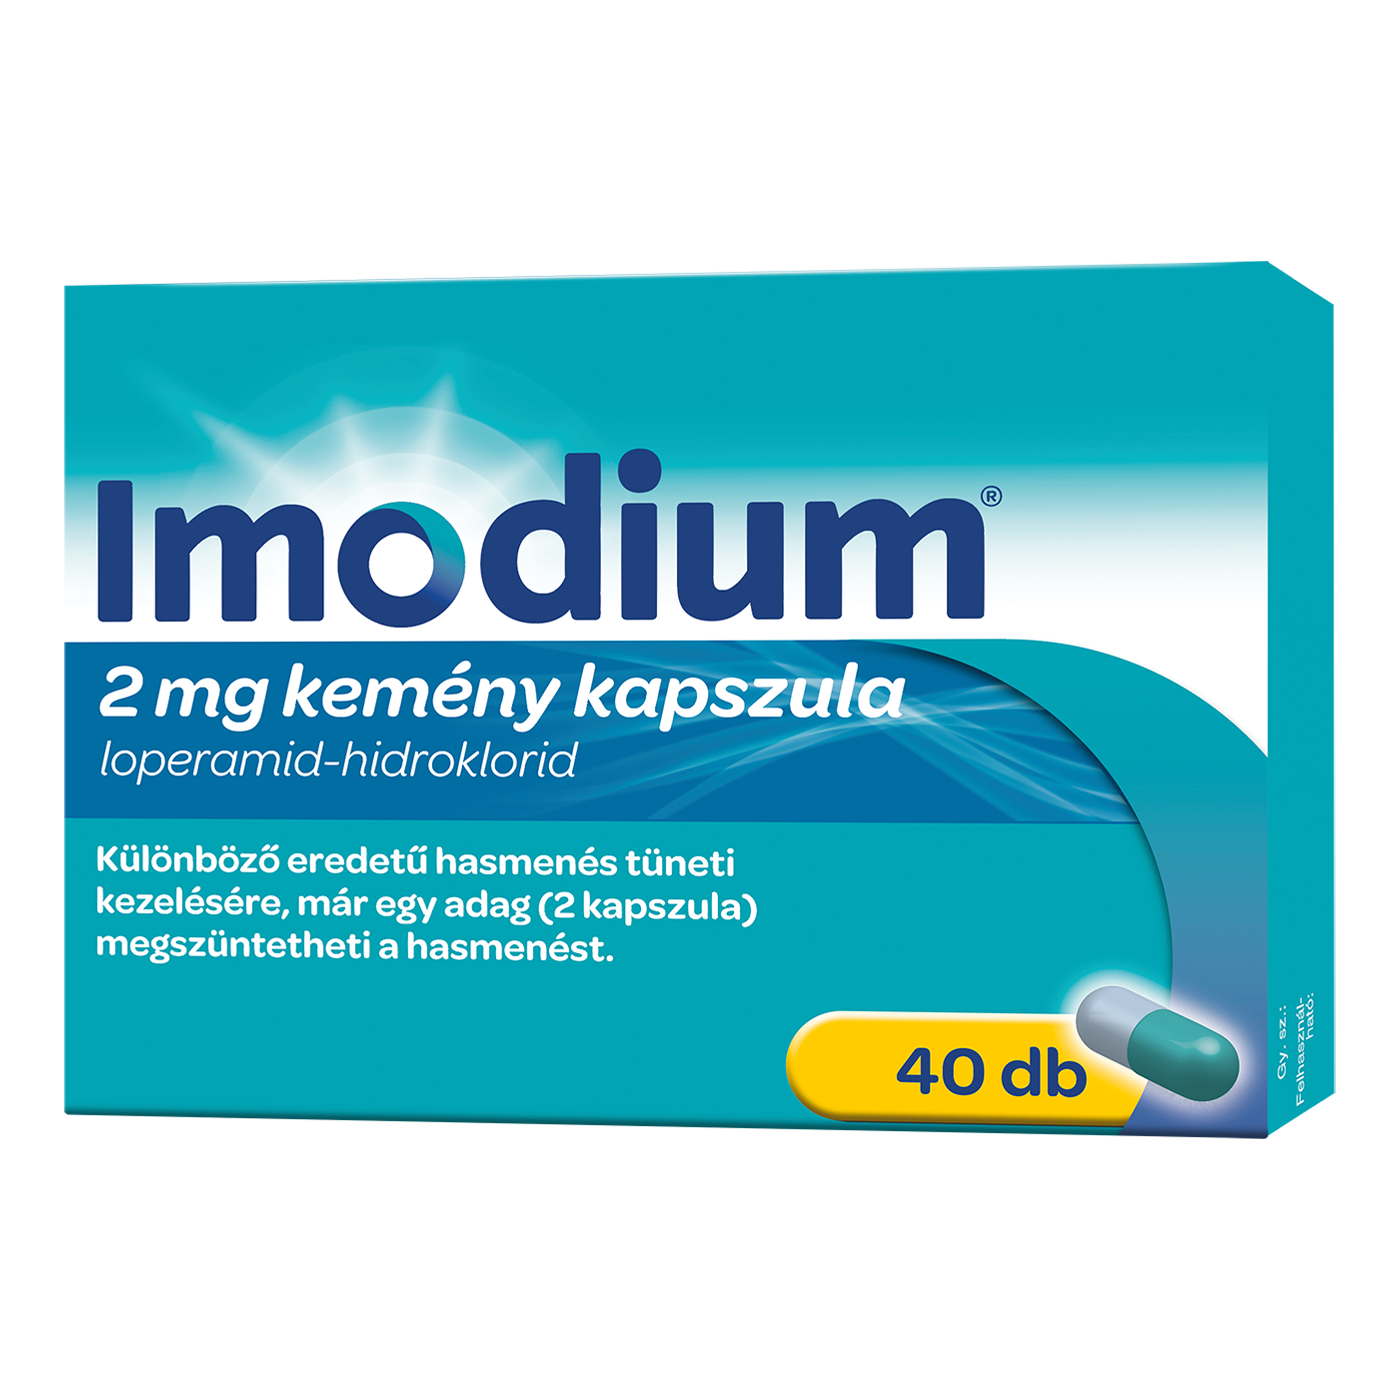 Imodium kemény kapszula, 40 db